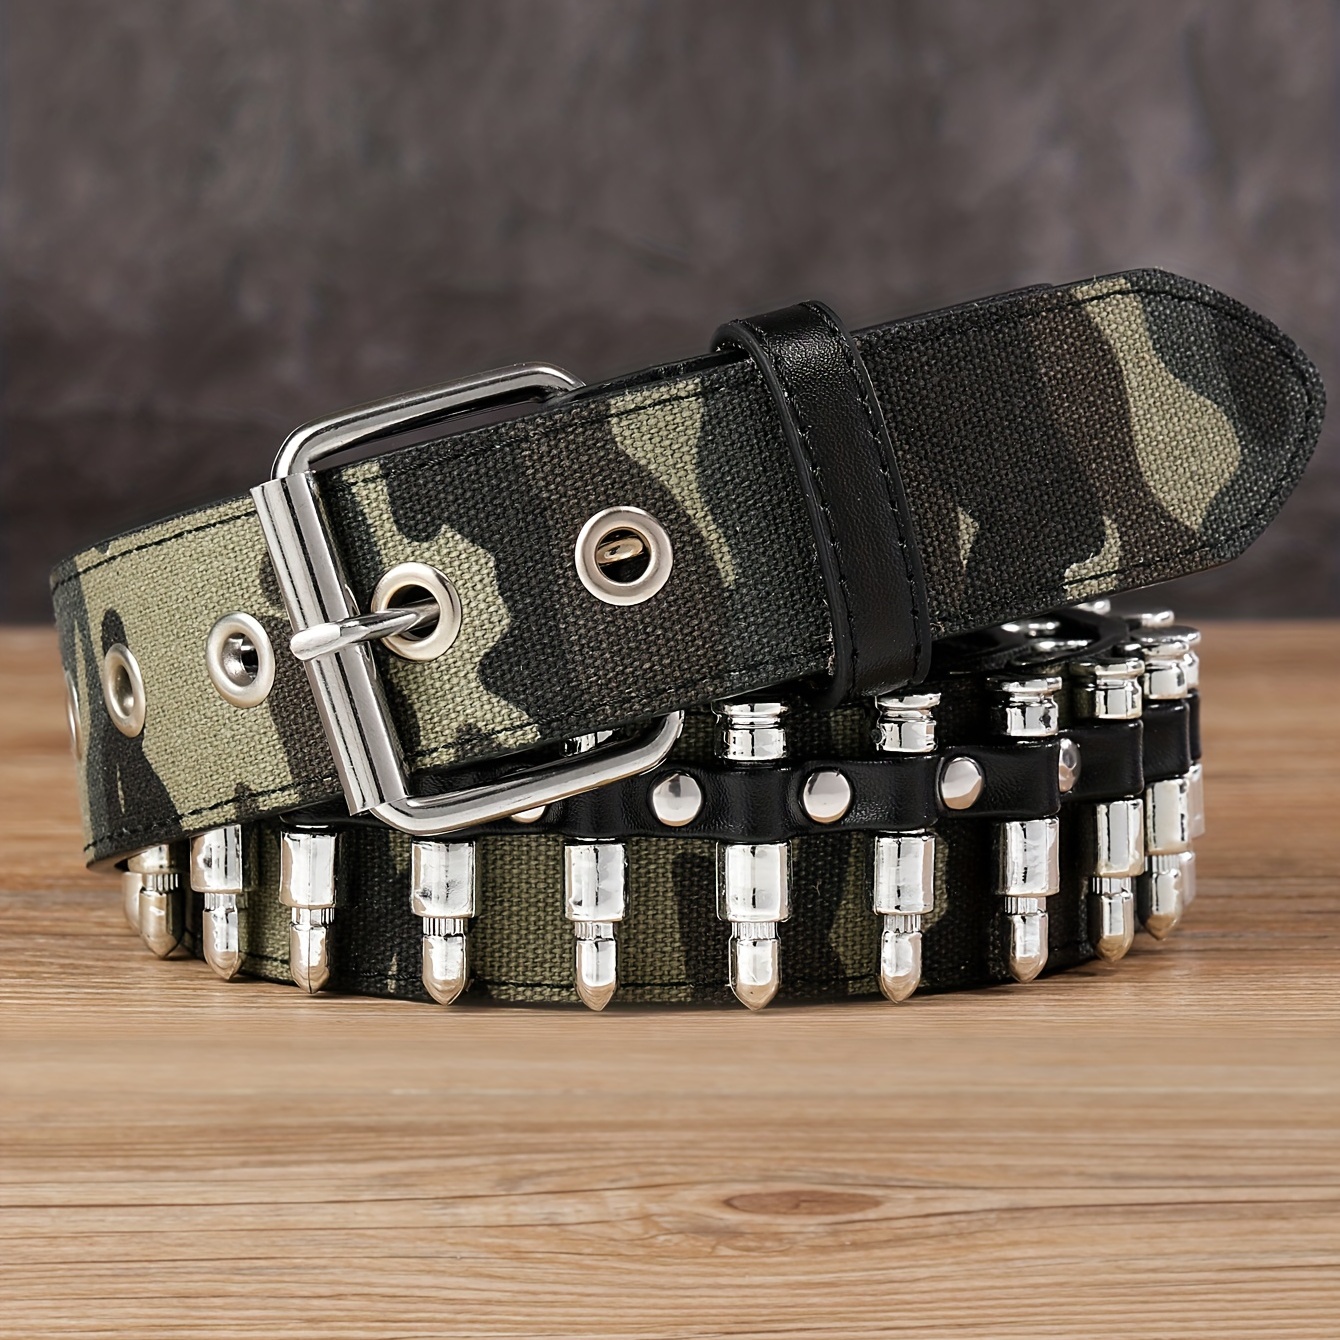 Las mejores ofertas en Cinturones militares de vestuario y bandas